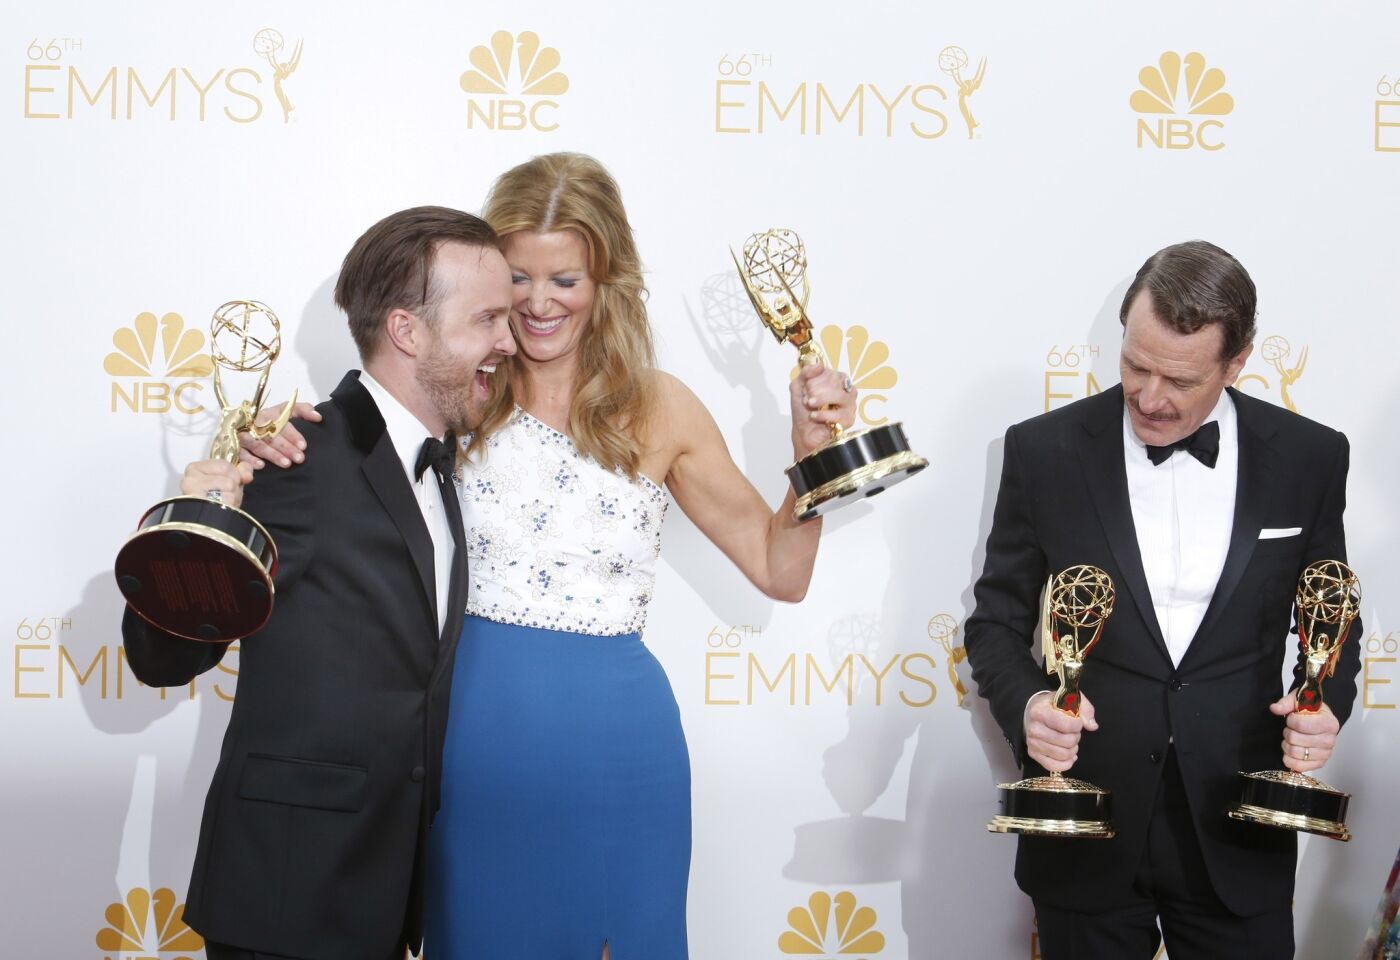 Emmys 2014: Winners' room | 'Breaking Bad'